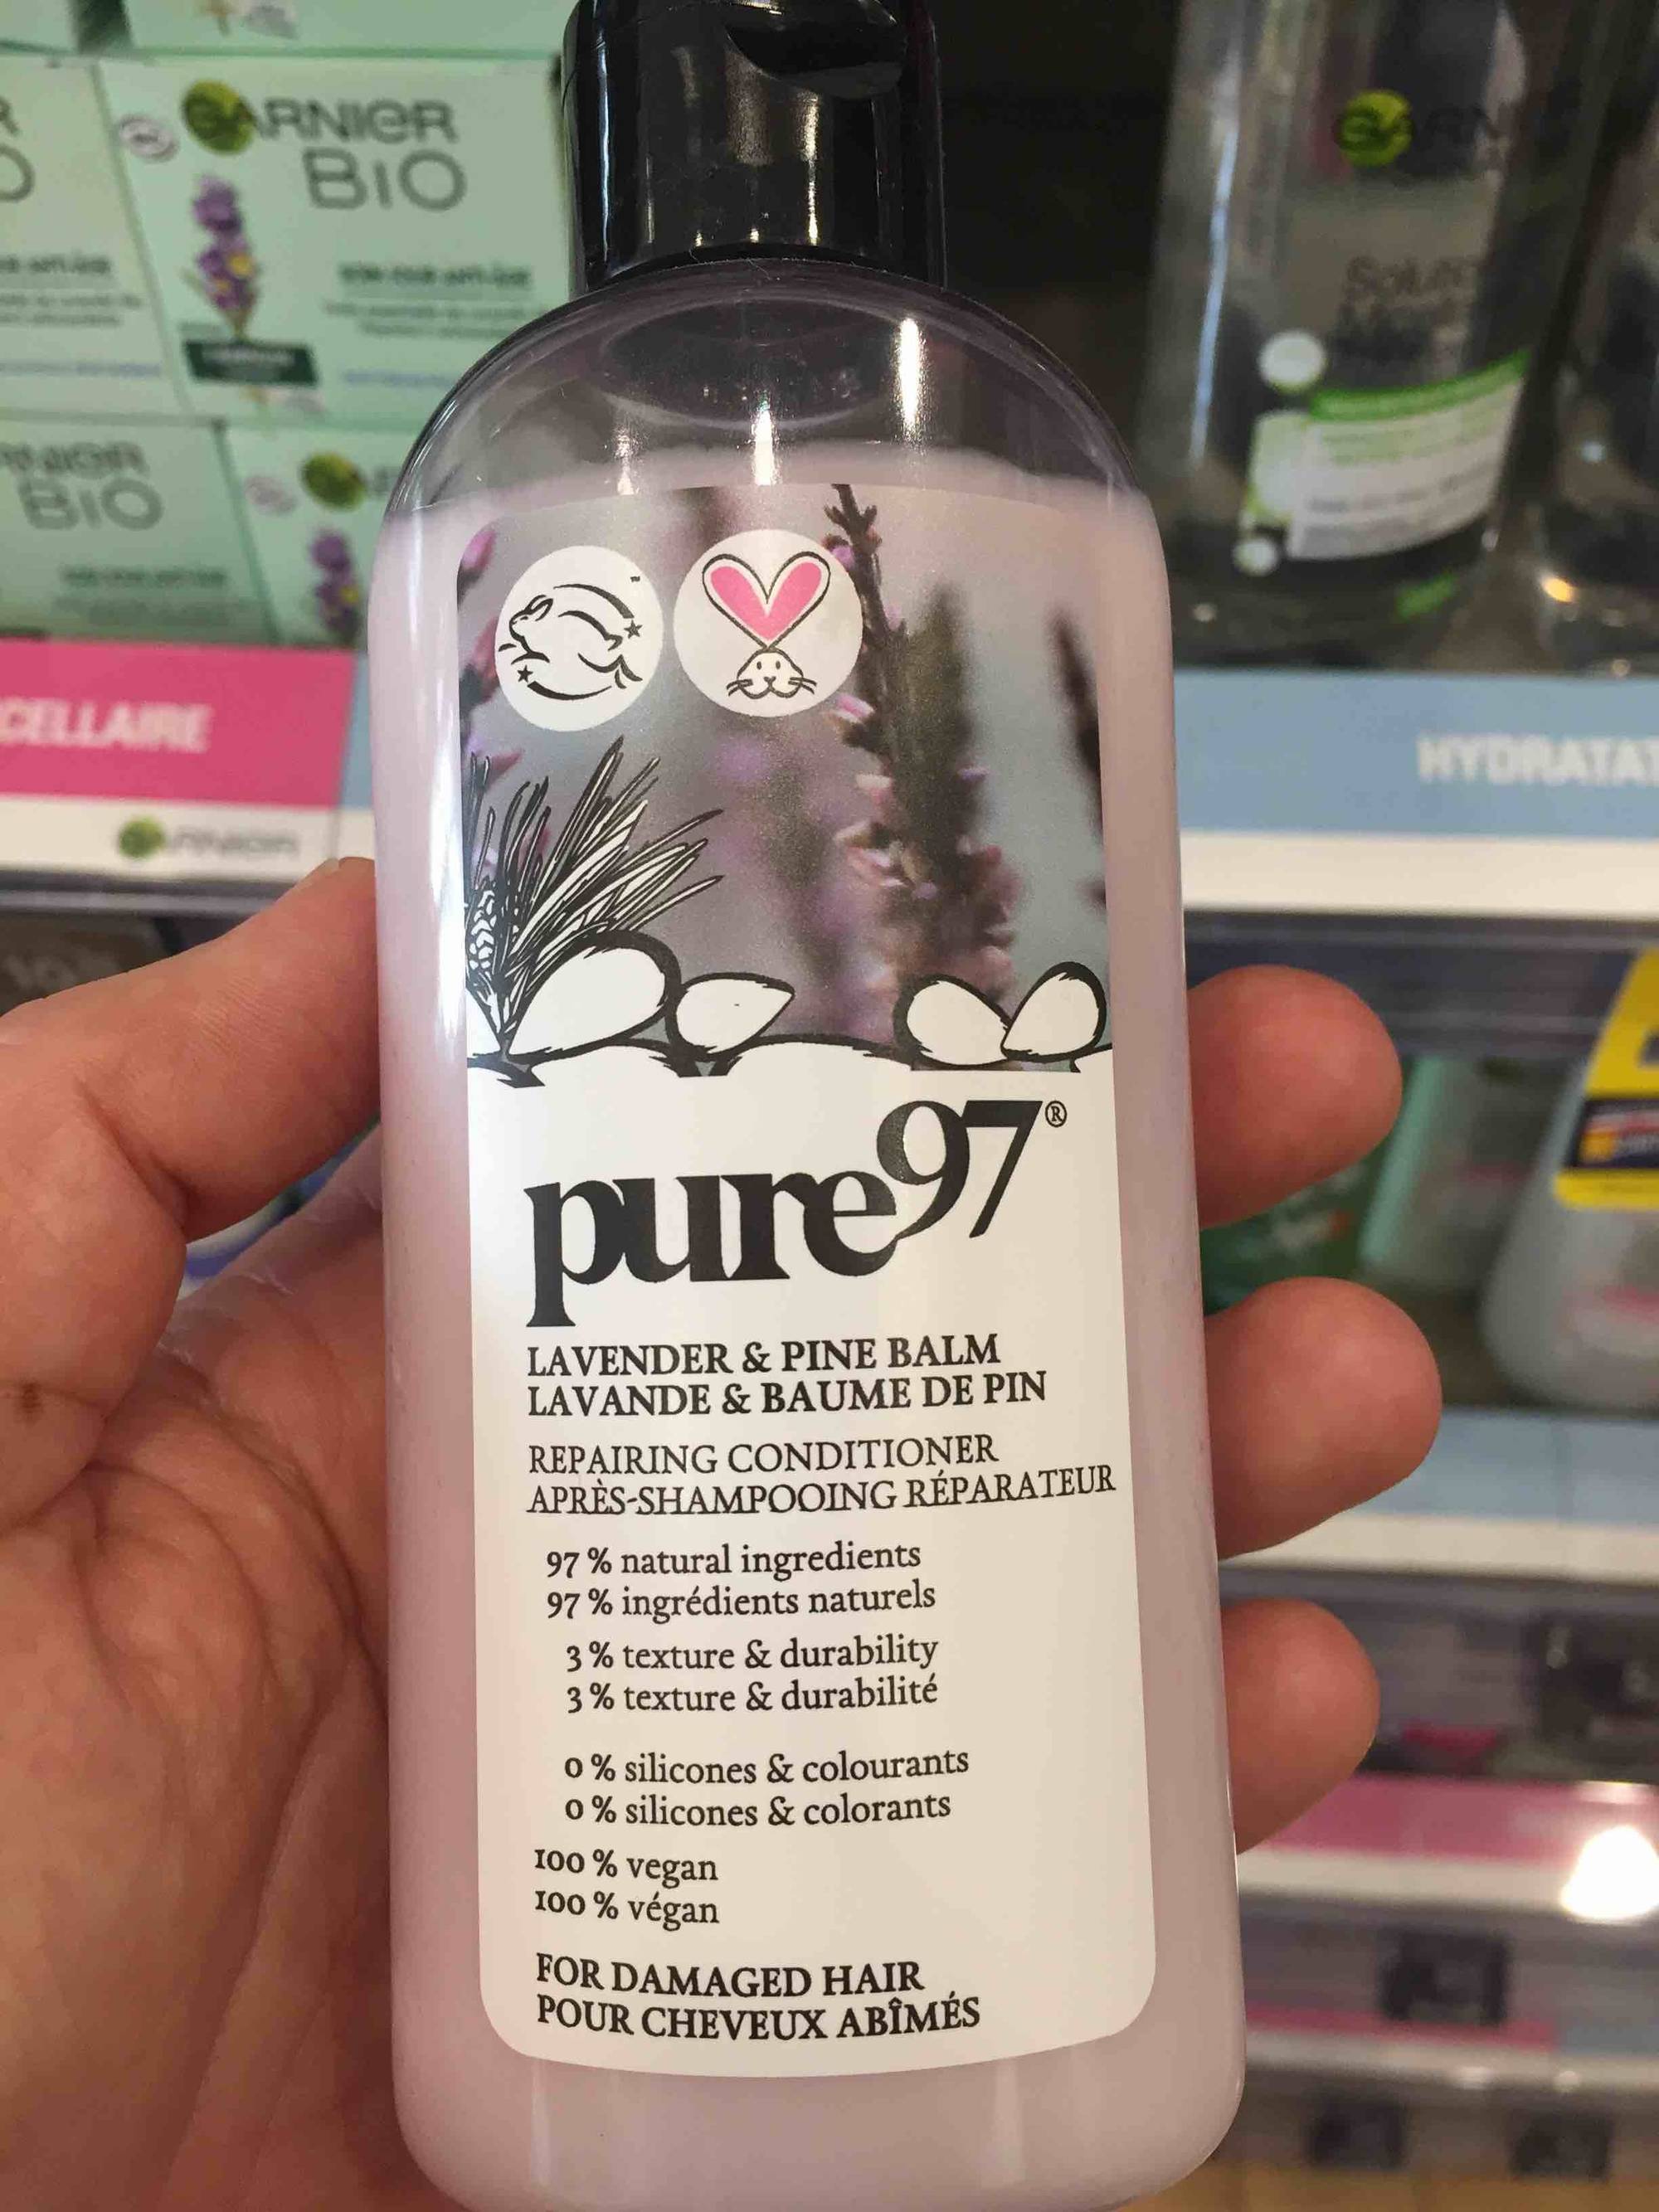 PURE 97 - Lavande & baume de pin - Après-shampooing réparateur